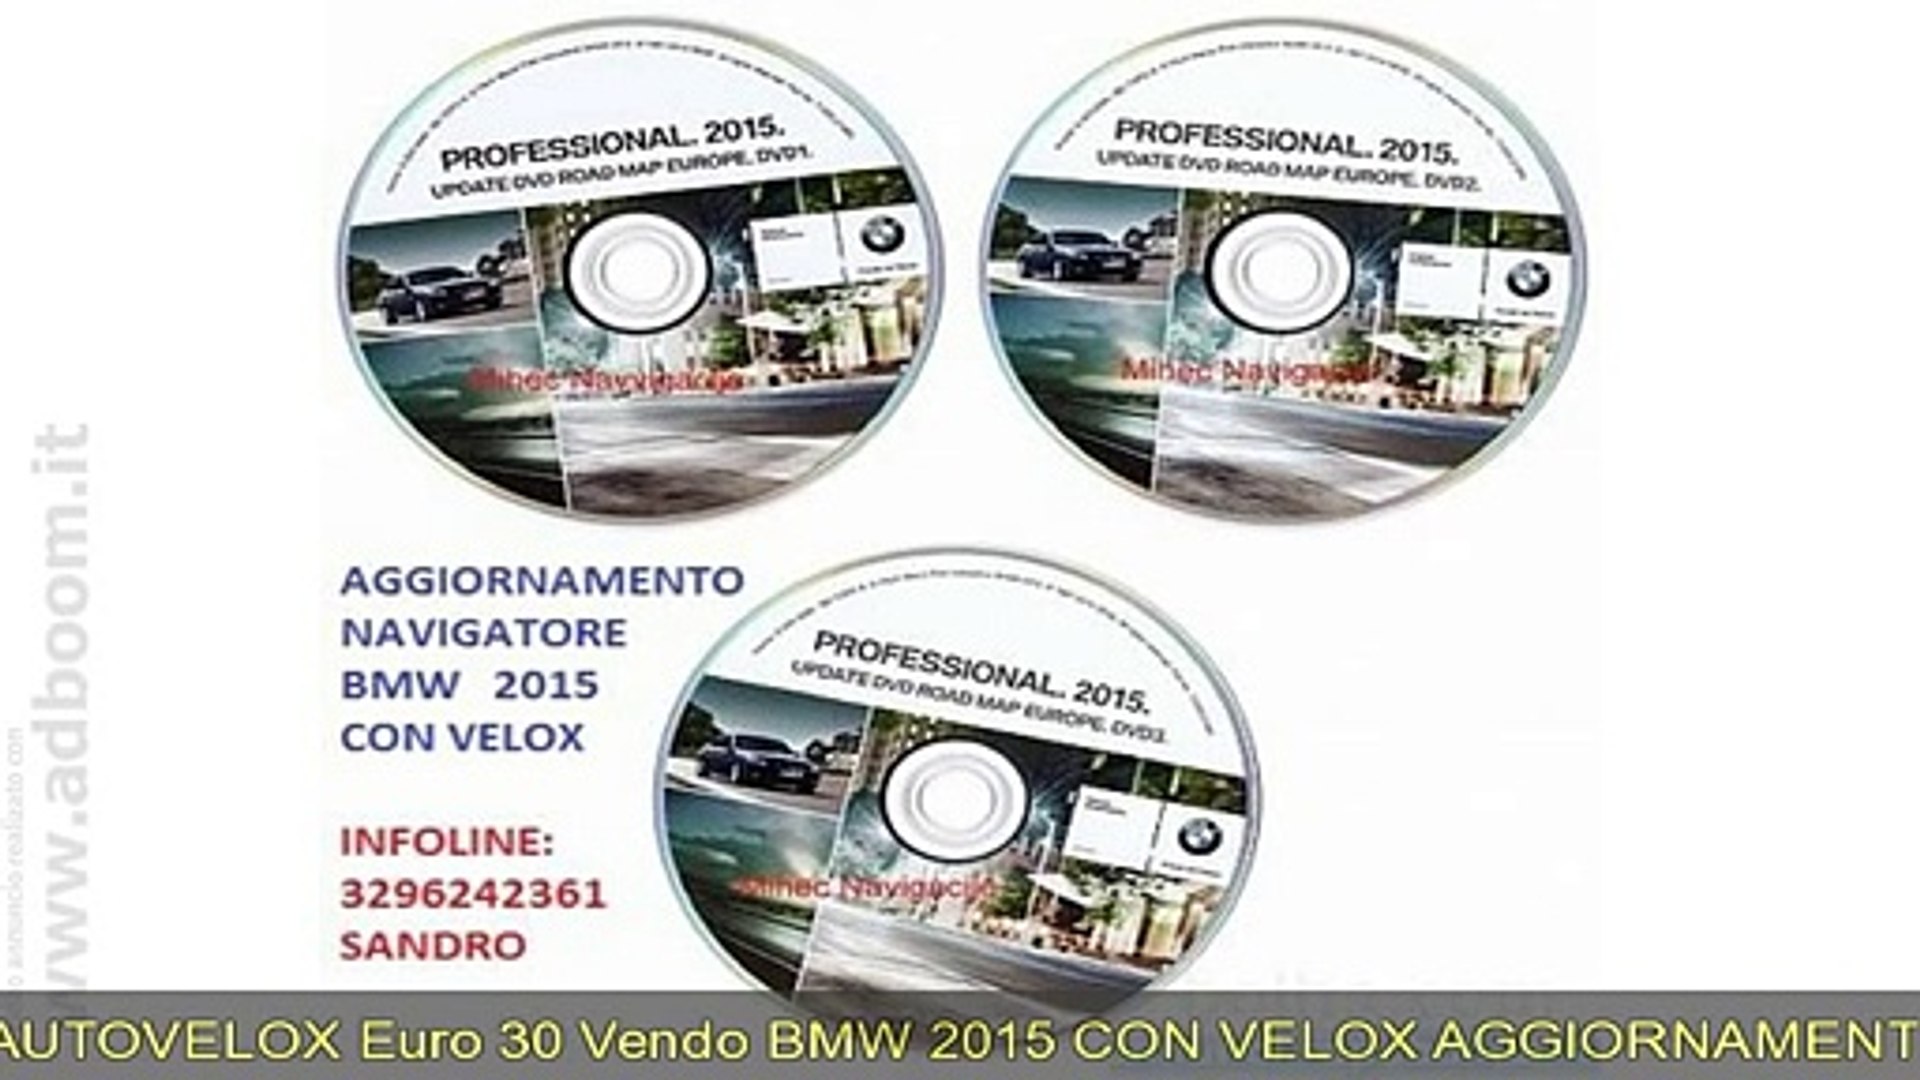 FIRENZE, BMW AGGIORNAMENTO NAVIGATORE 2015 CON AUTOVELOX EURO 30 - Video  Dailymotion